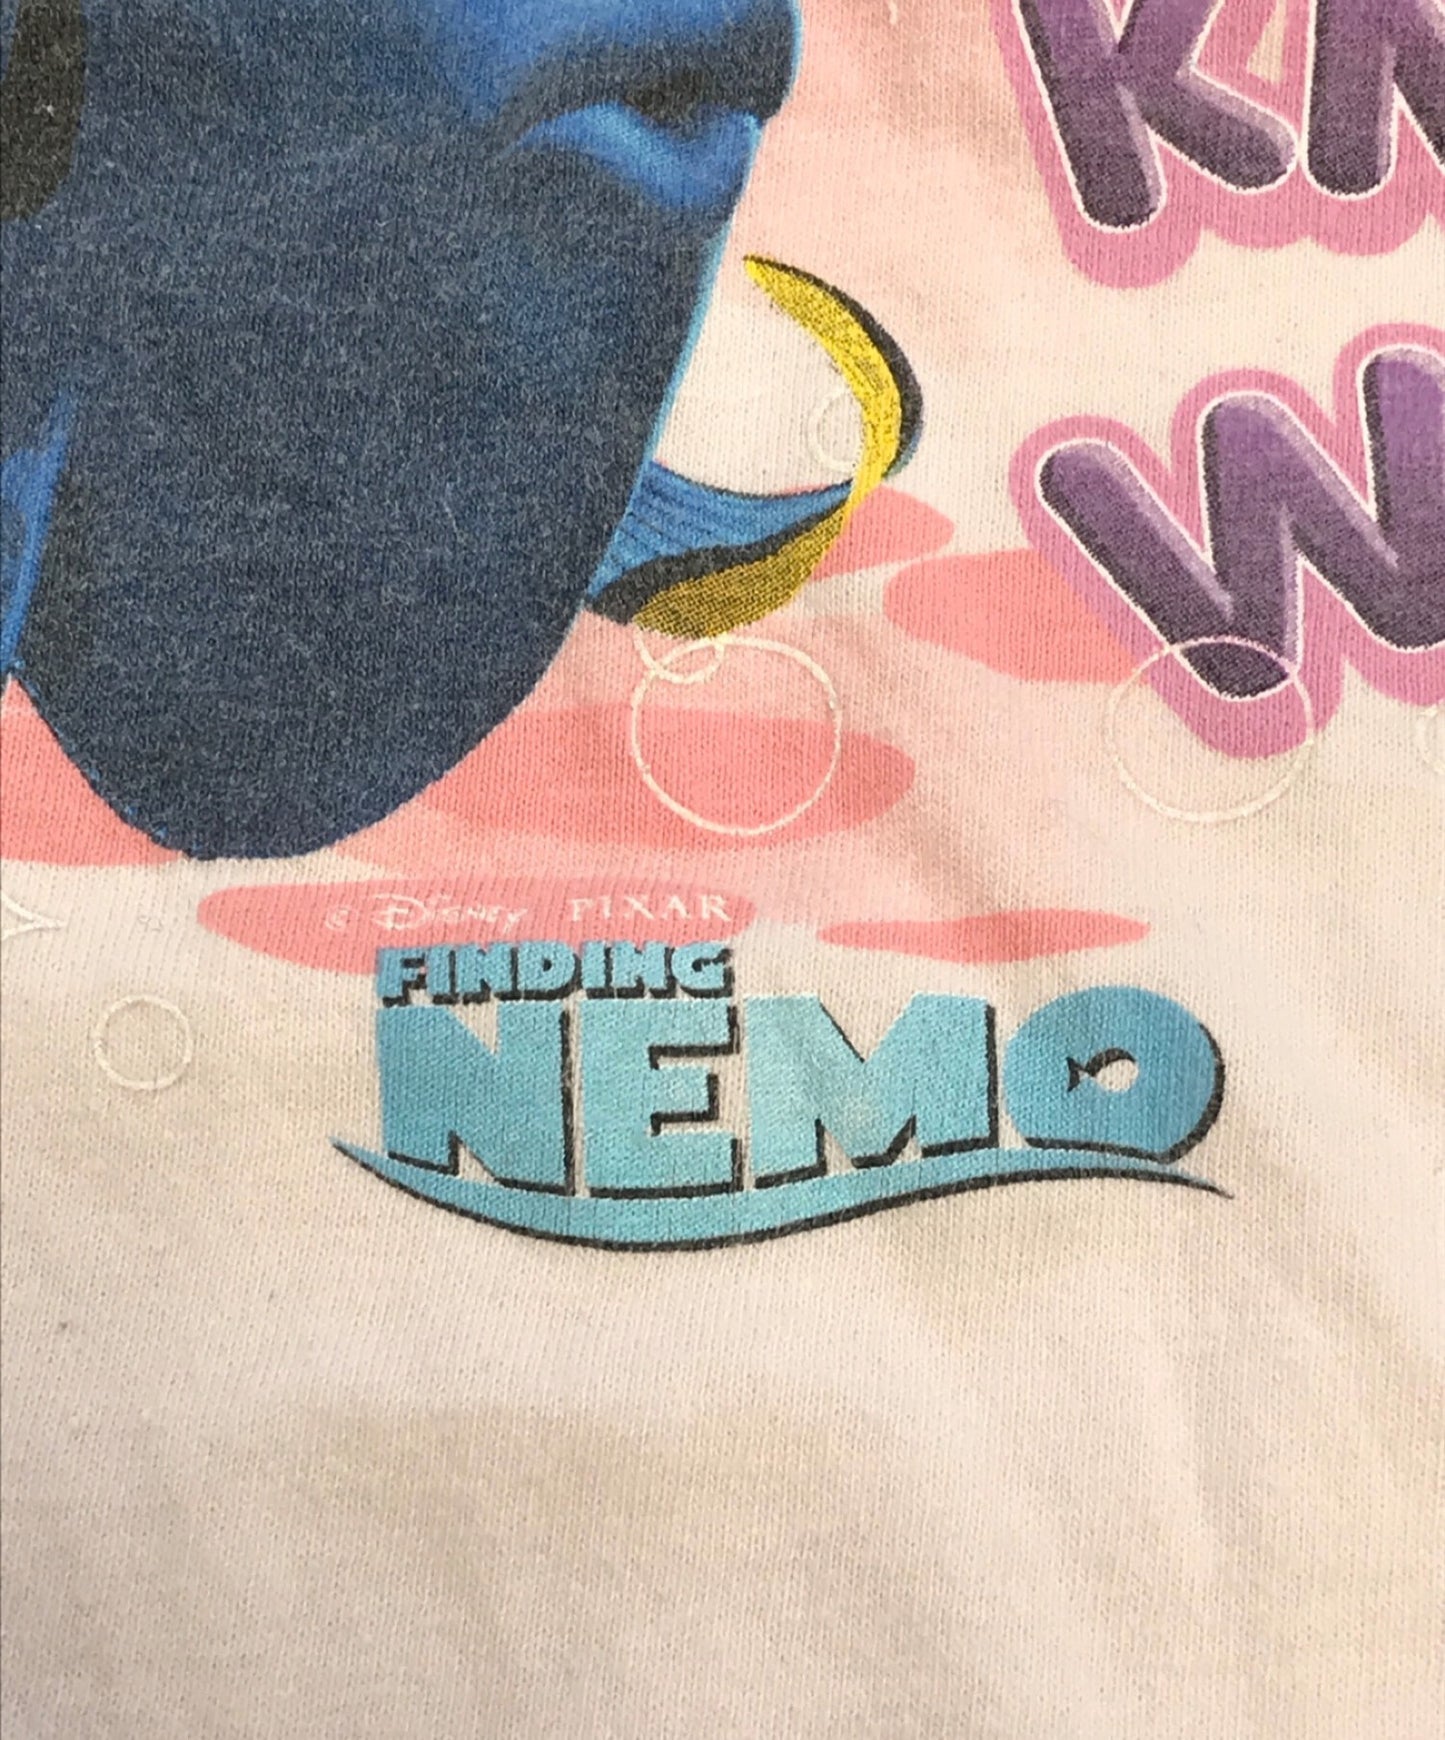 การค้นหาเสื้อยืดหนังของ Nemo